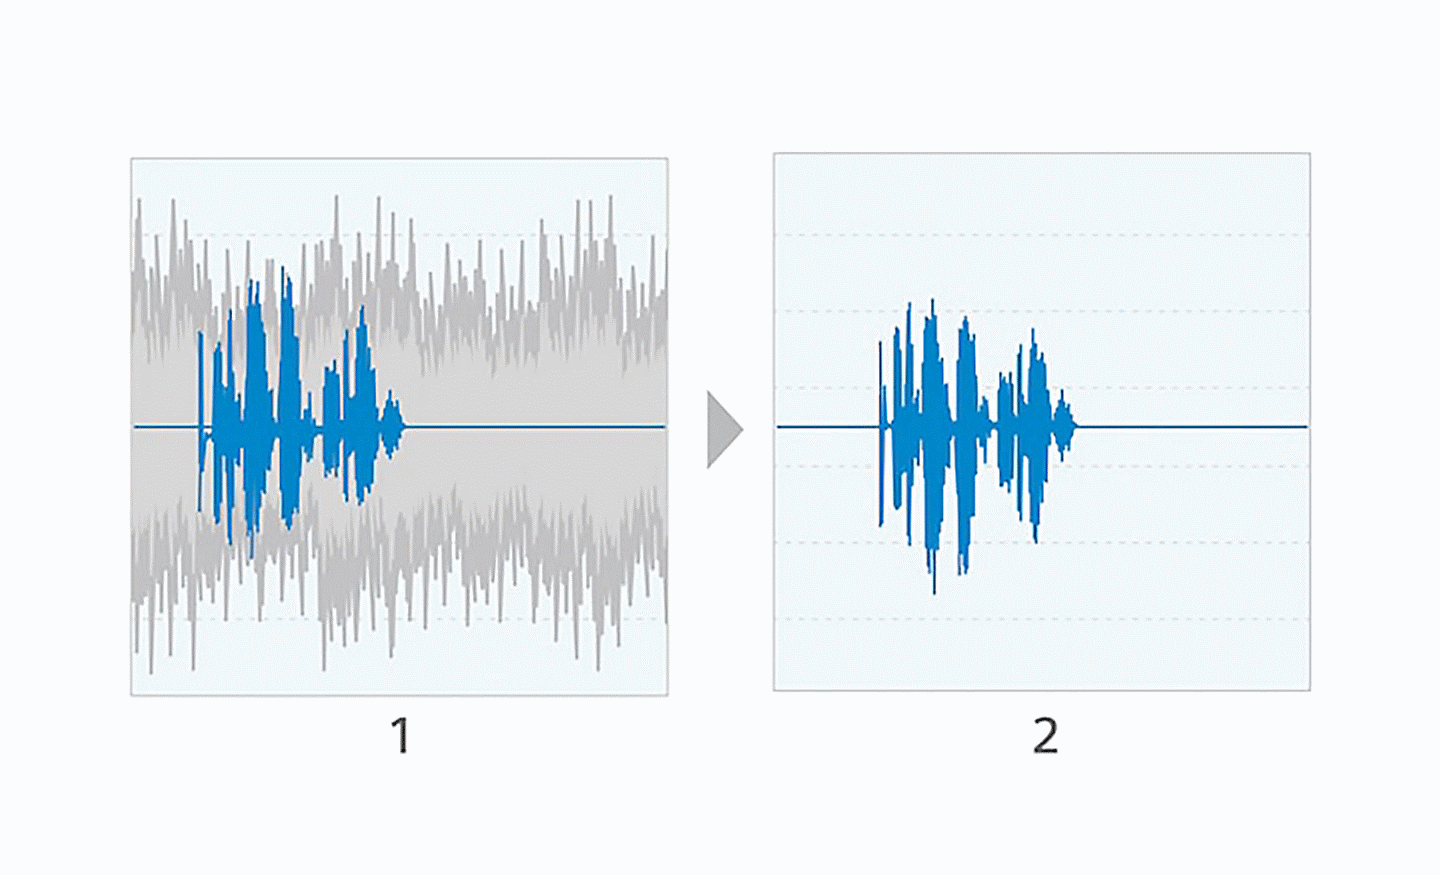 Hình ảnh hai biểu đồ sóng âm cạnh nhau, bên trái có các đường màu xanh lam và xám, còn bên phải chỉ có các đường màu xanh lam